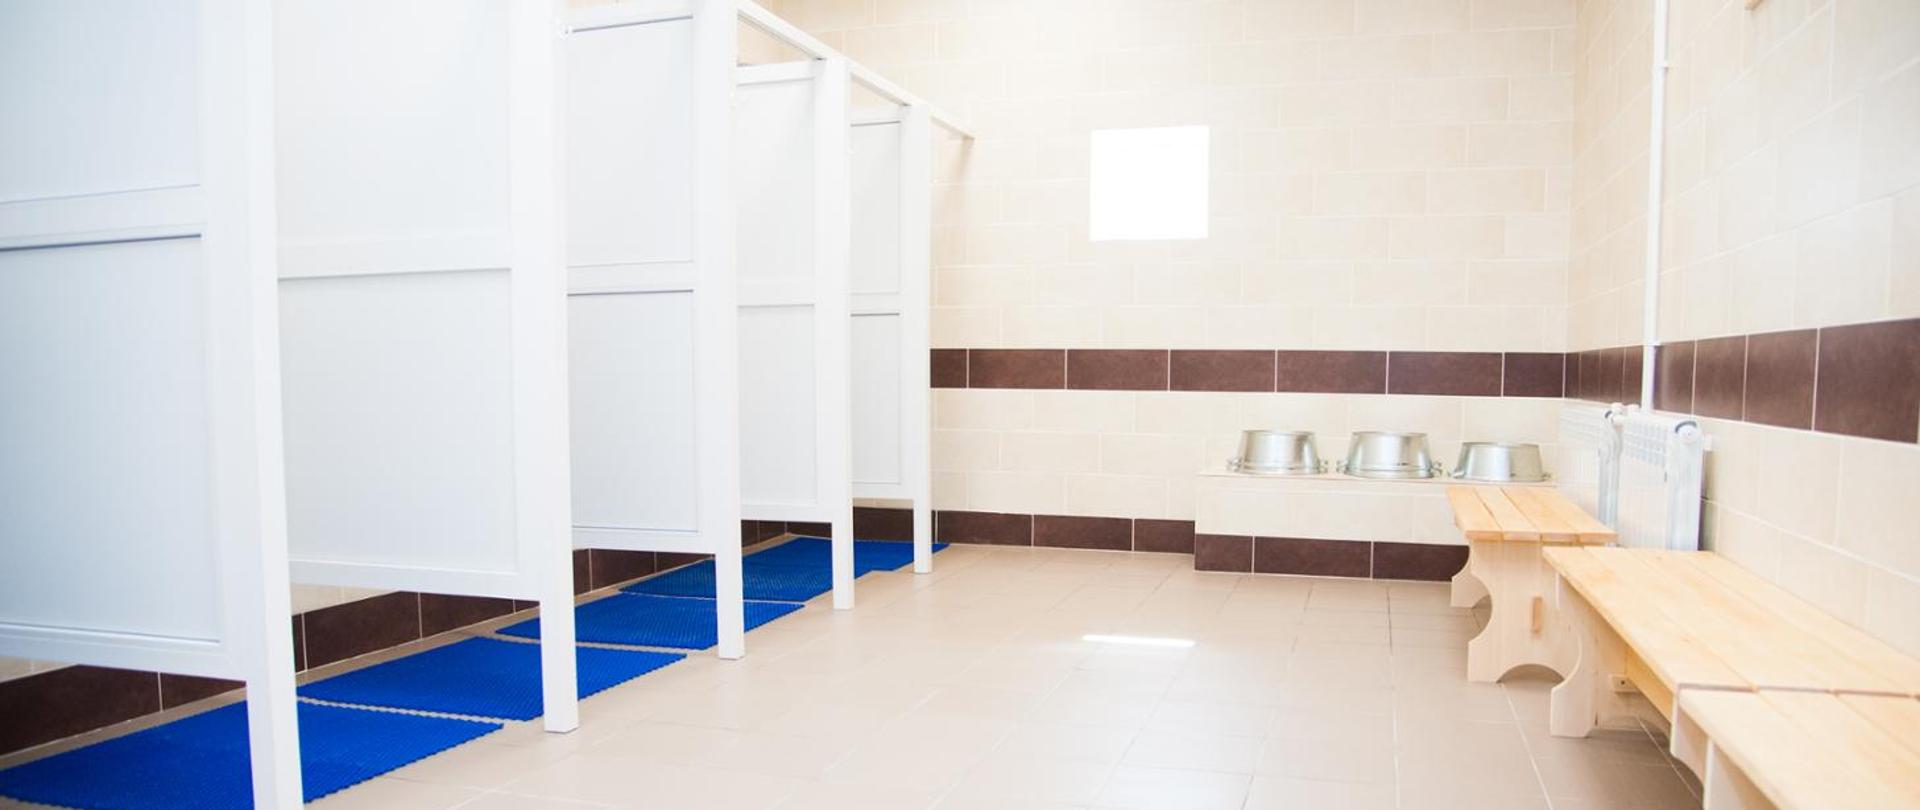 Pomieszczenie sanitarne z prysznicami